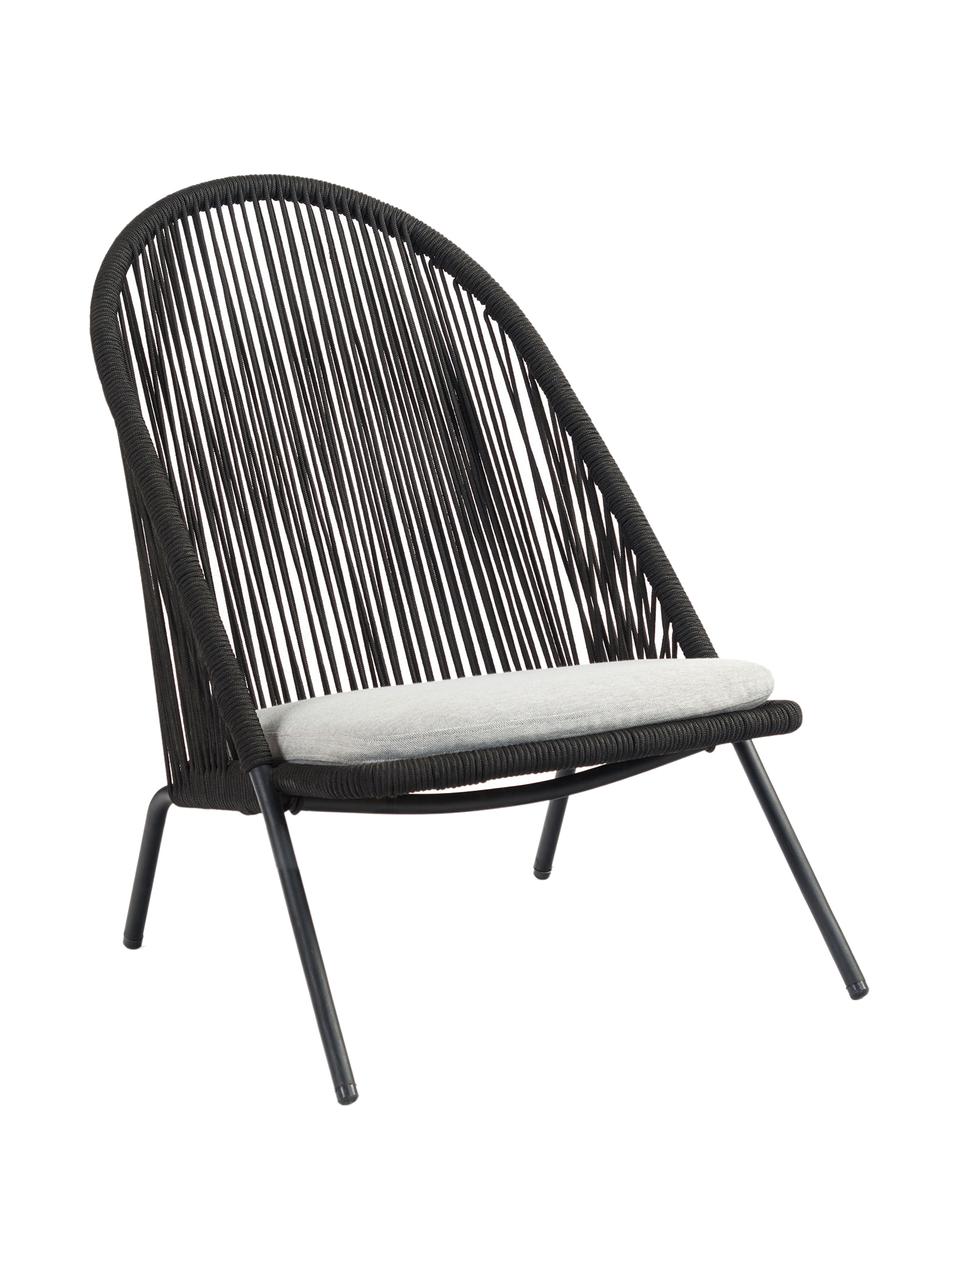 Fotel ze splotu z tworzywa sztucznego Shann, Stelaż: metal malowany proszkowo, Czarny, jasny szary, S 63 x G 73 cm